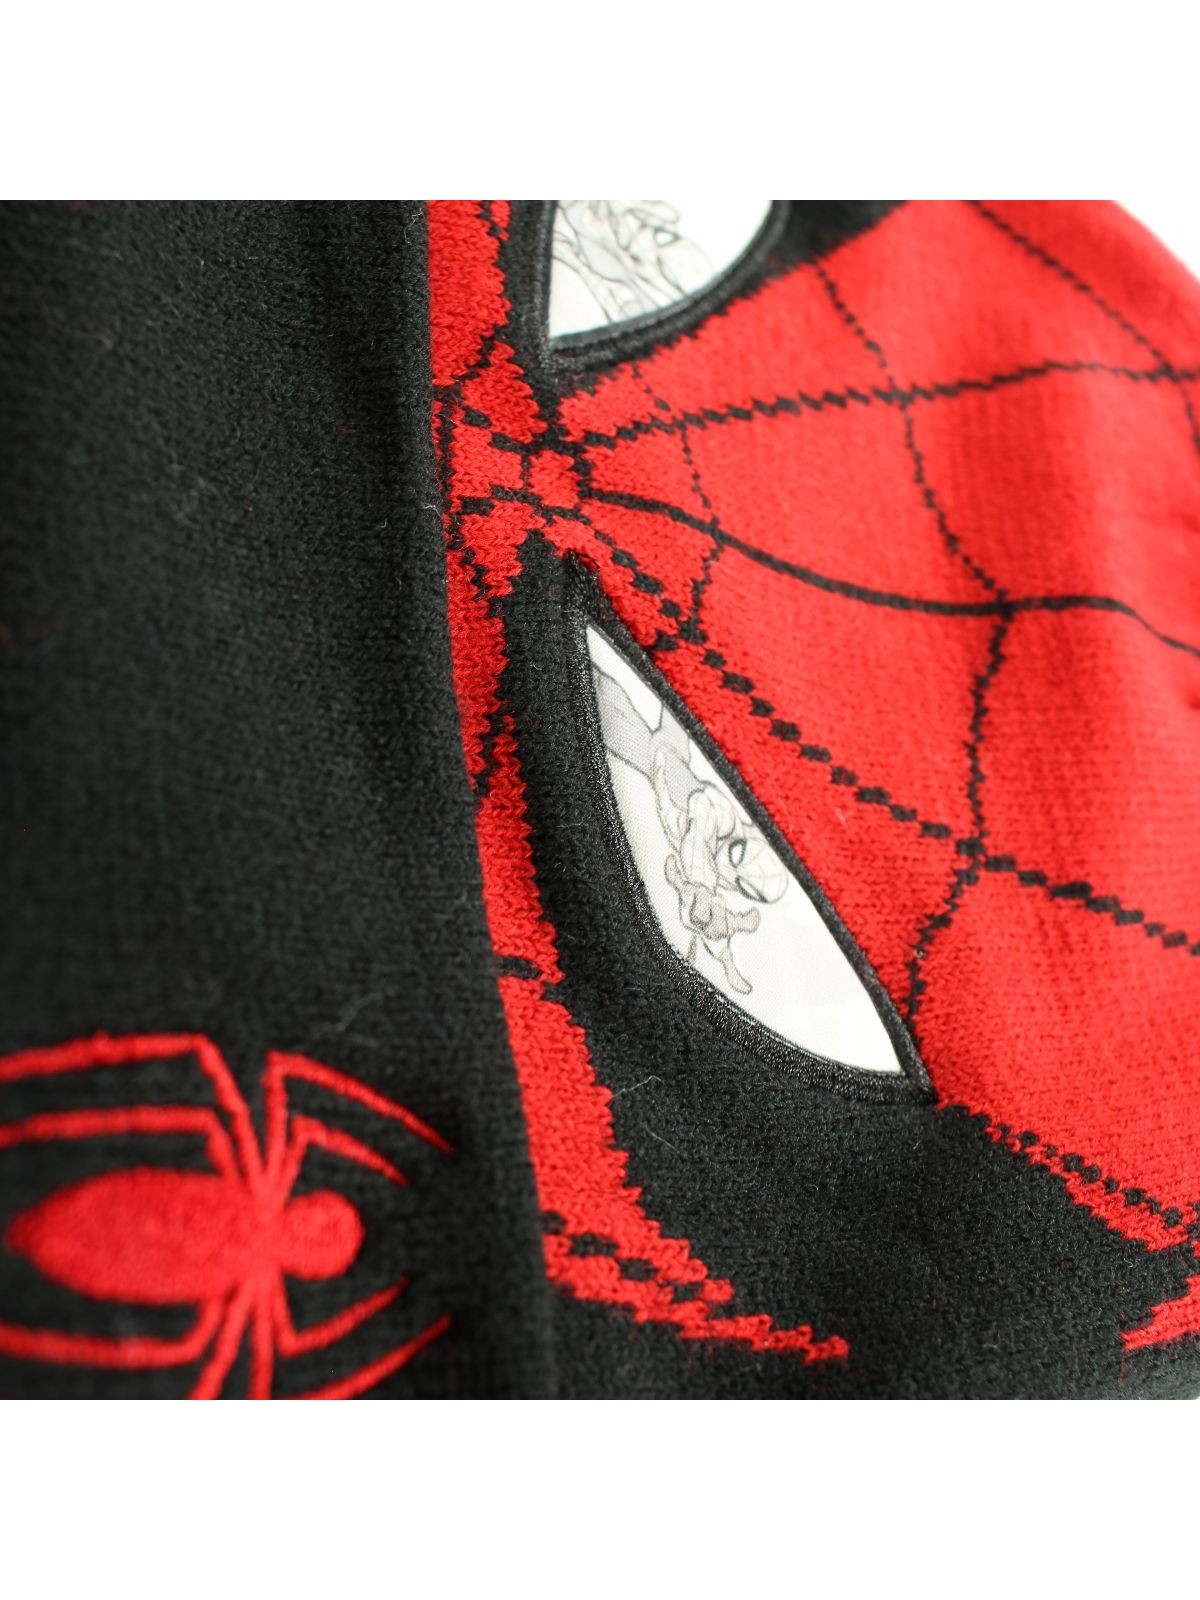 Bonnet avec pompon Spiderman